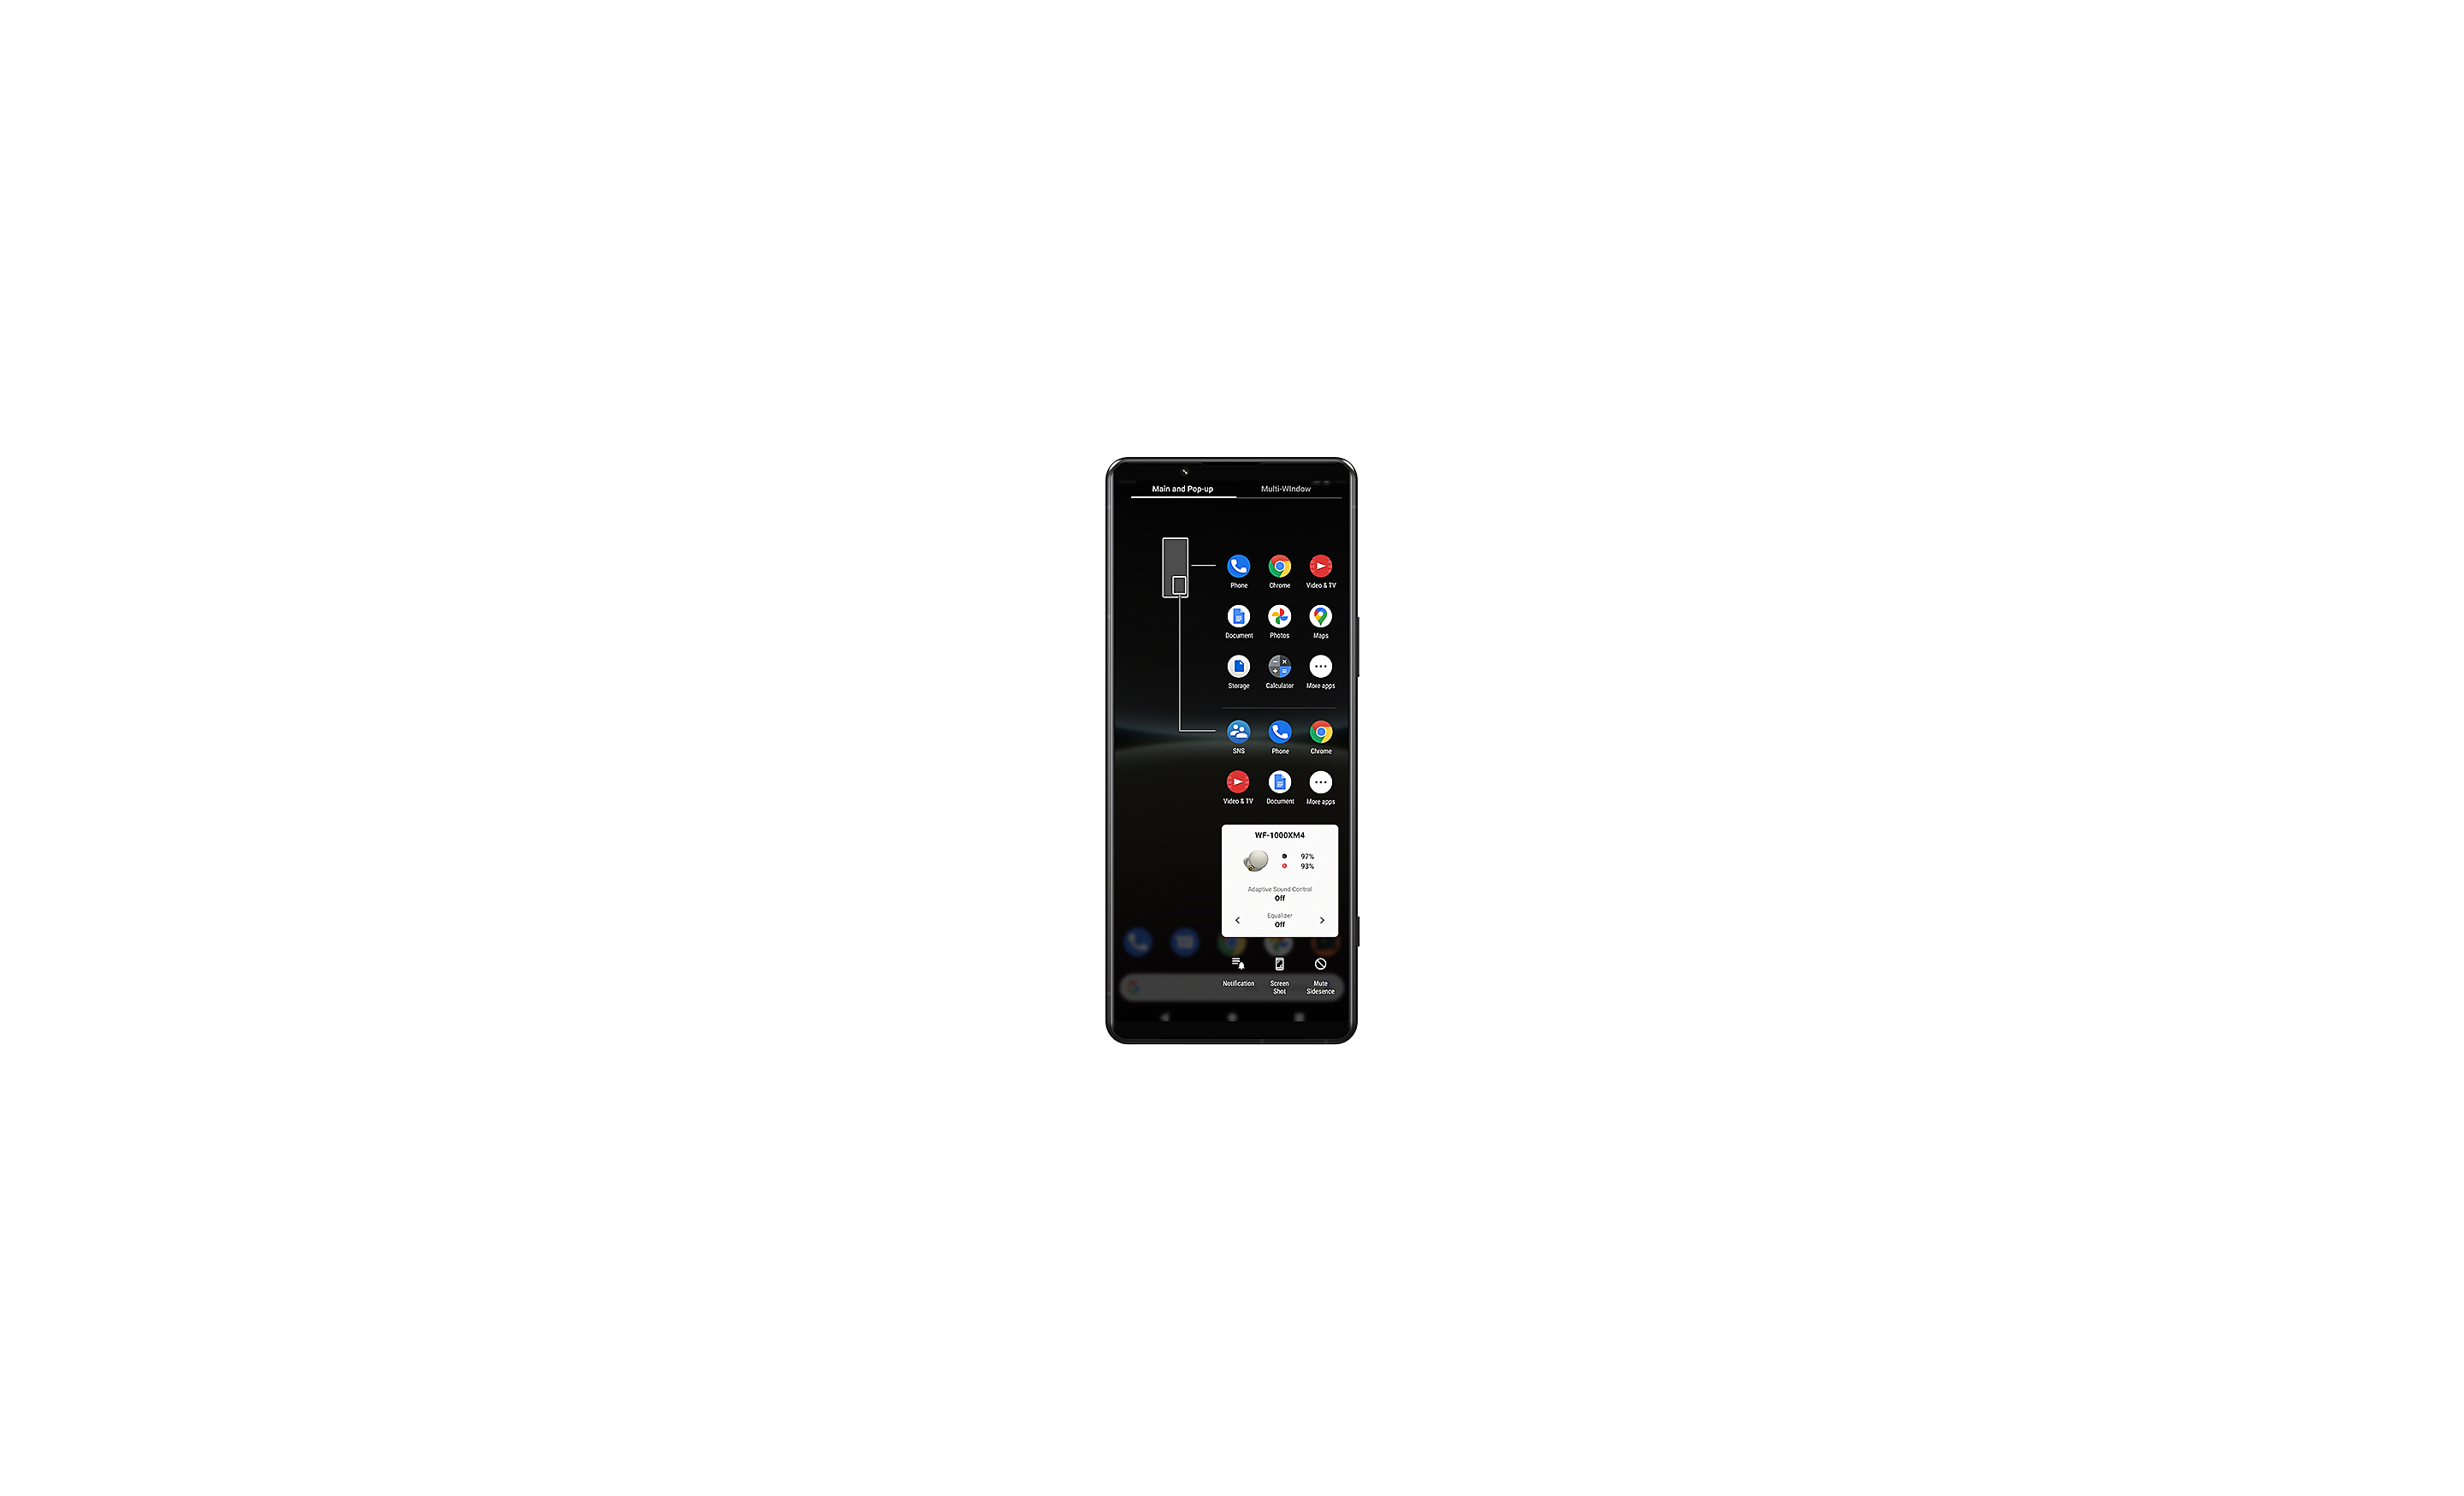 Xperia 智能手機顯示著視窗管理員用戶介面